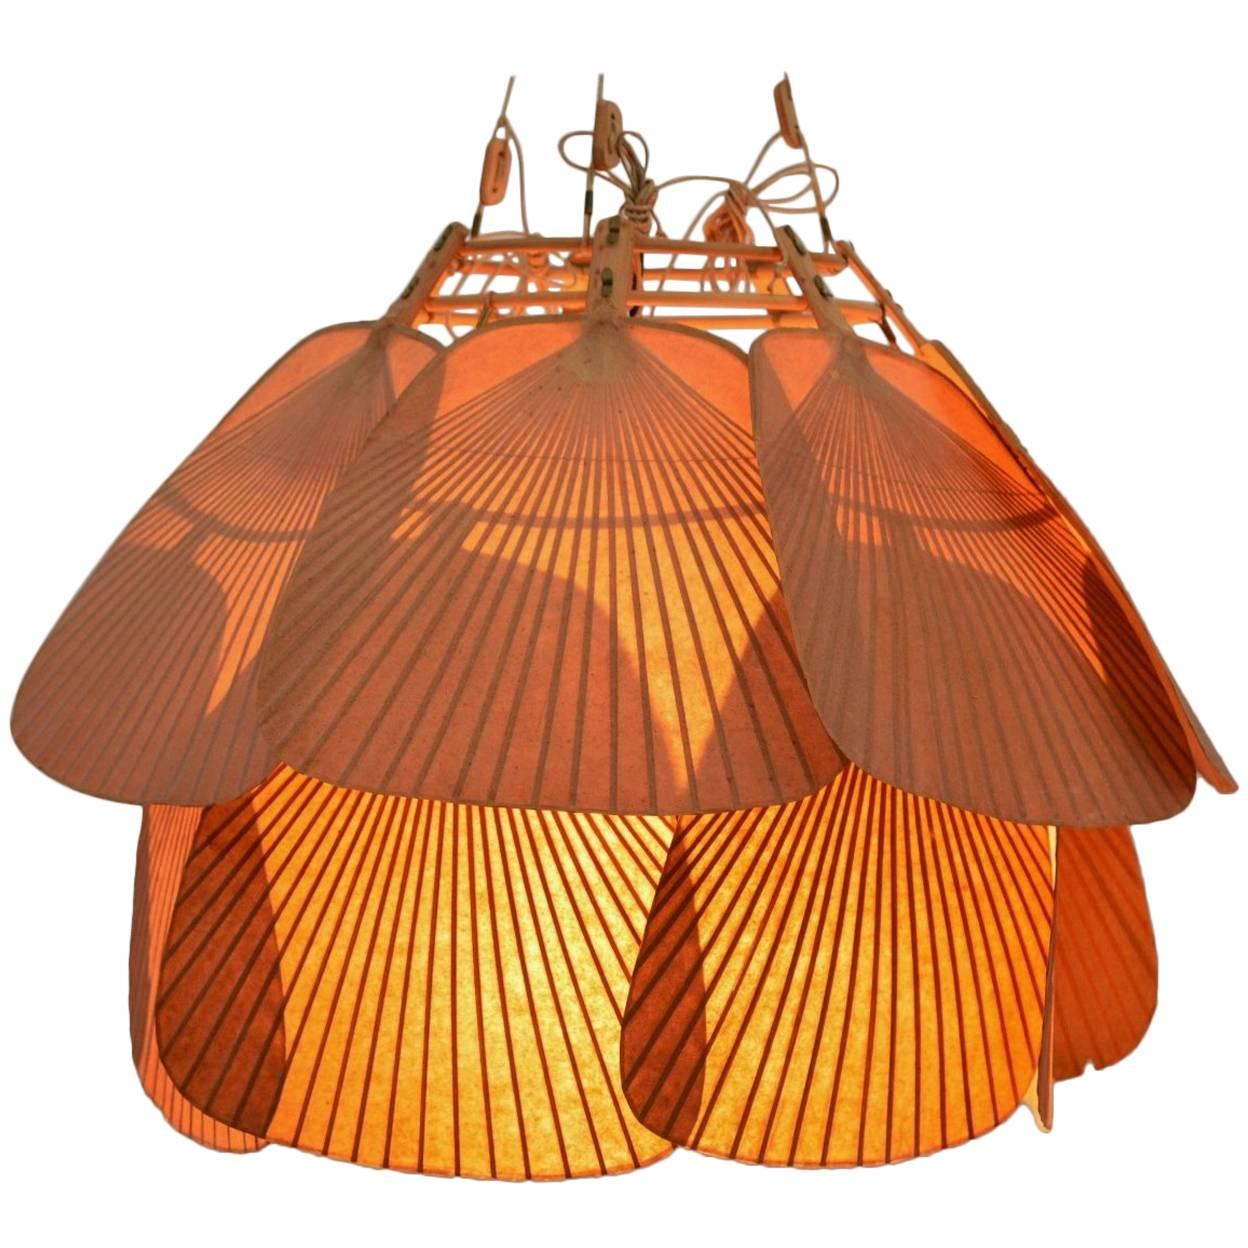 Rare Ju-Yon Ceiling Lamp by Ingo Maurer, 1973